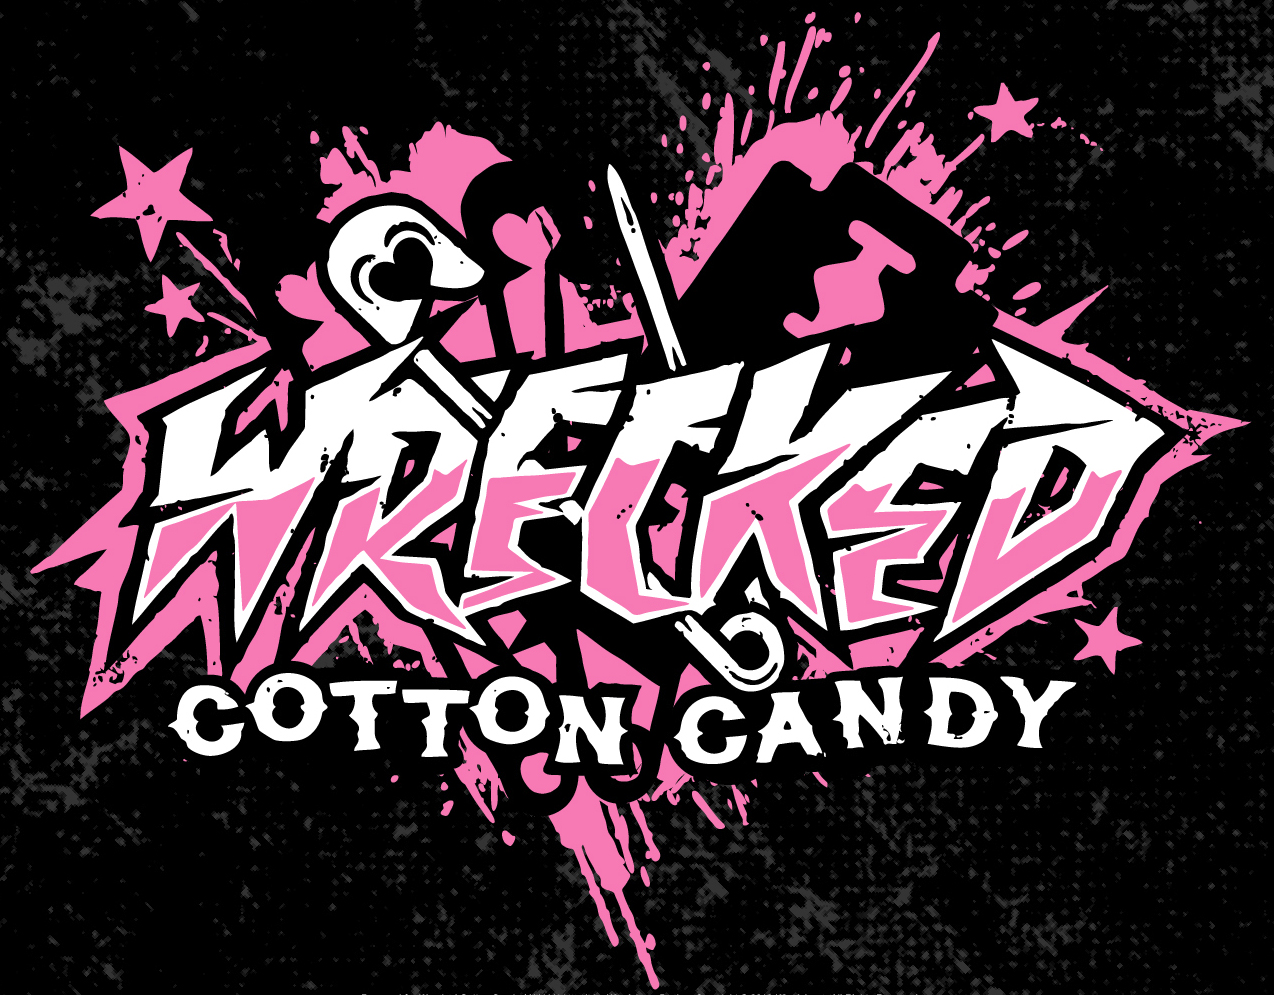 Wrecked Cotton Candy logo